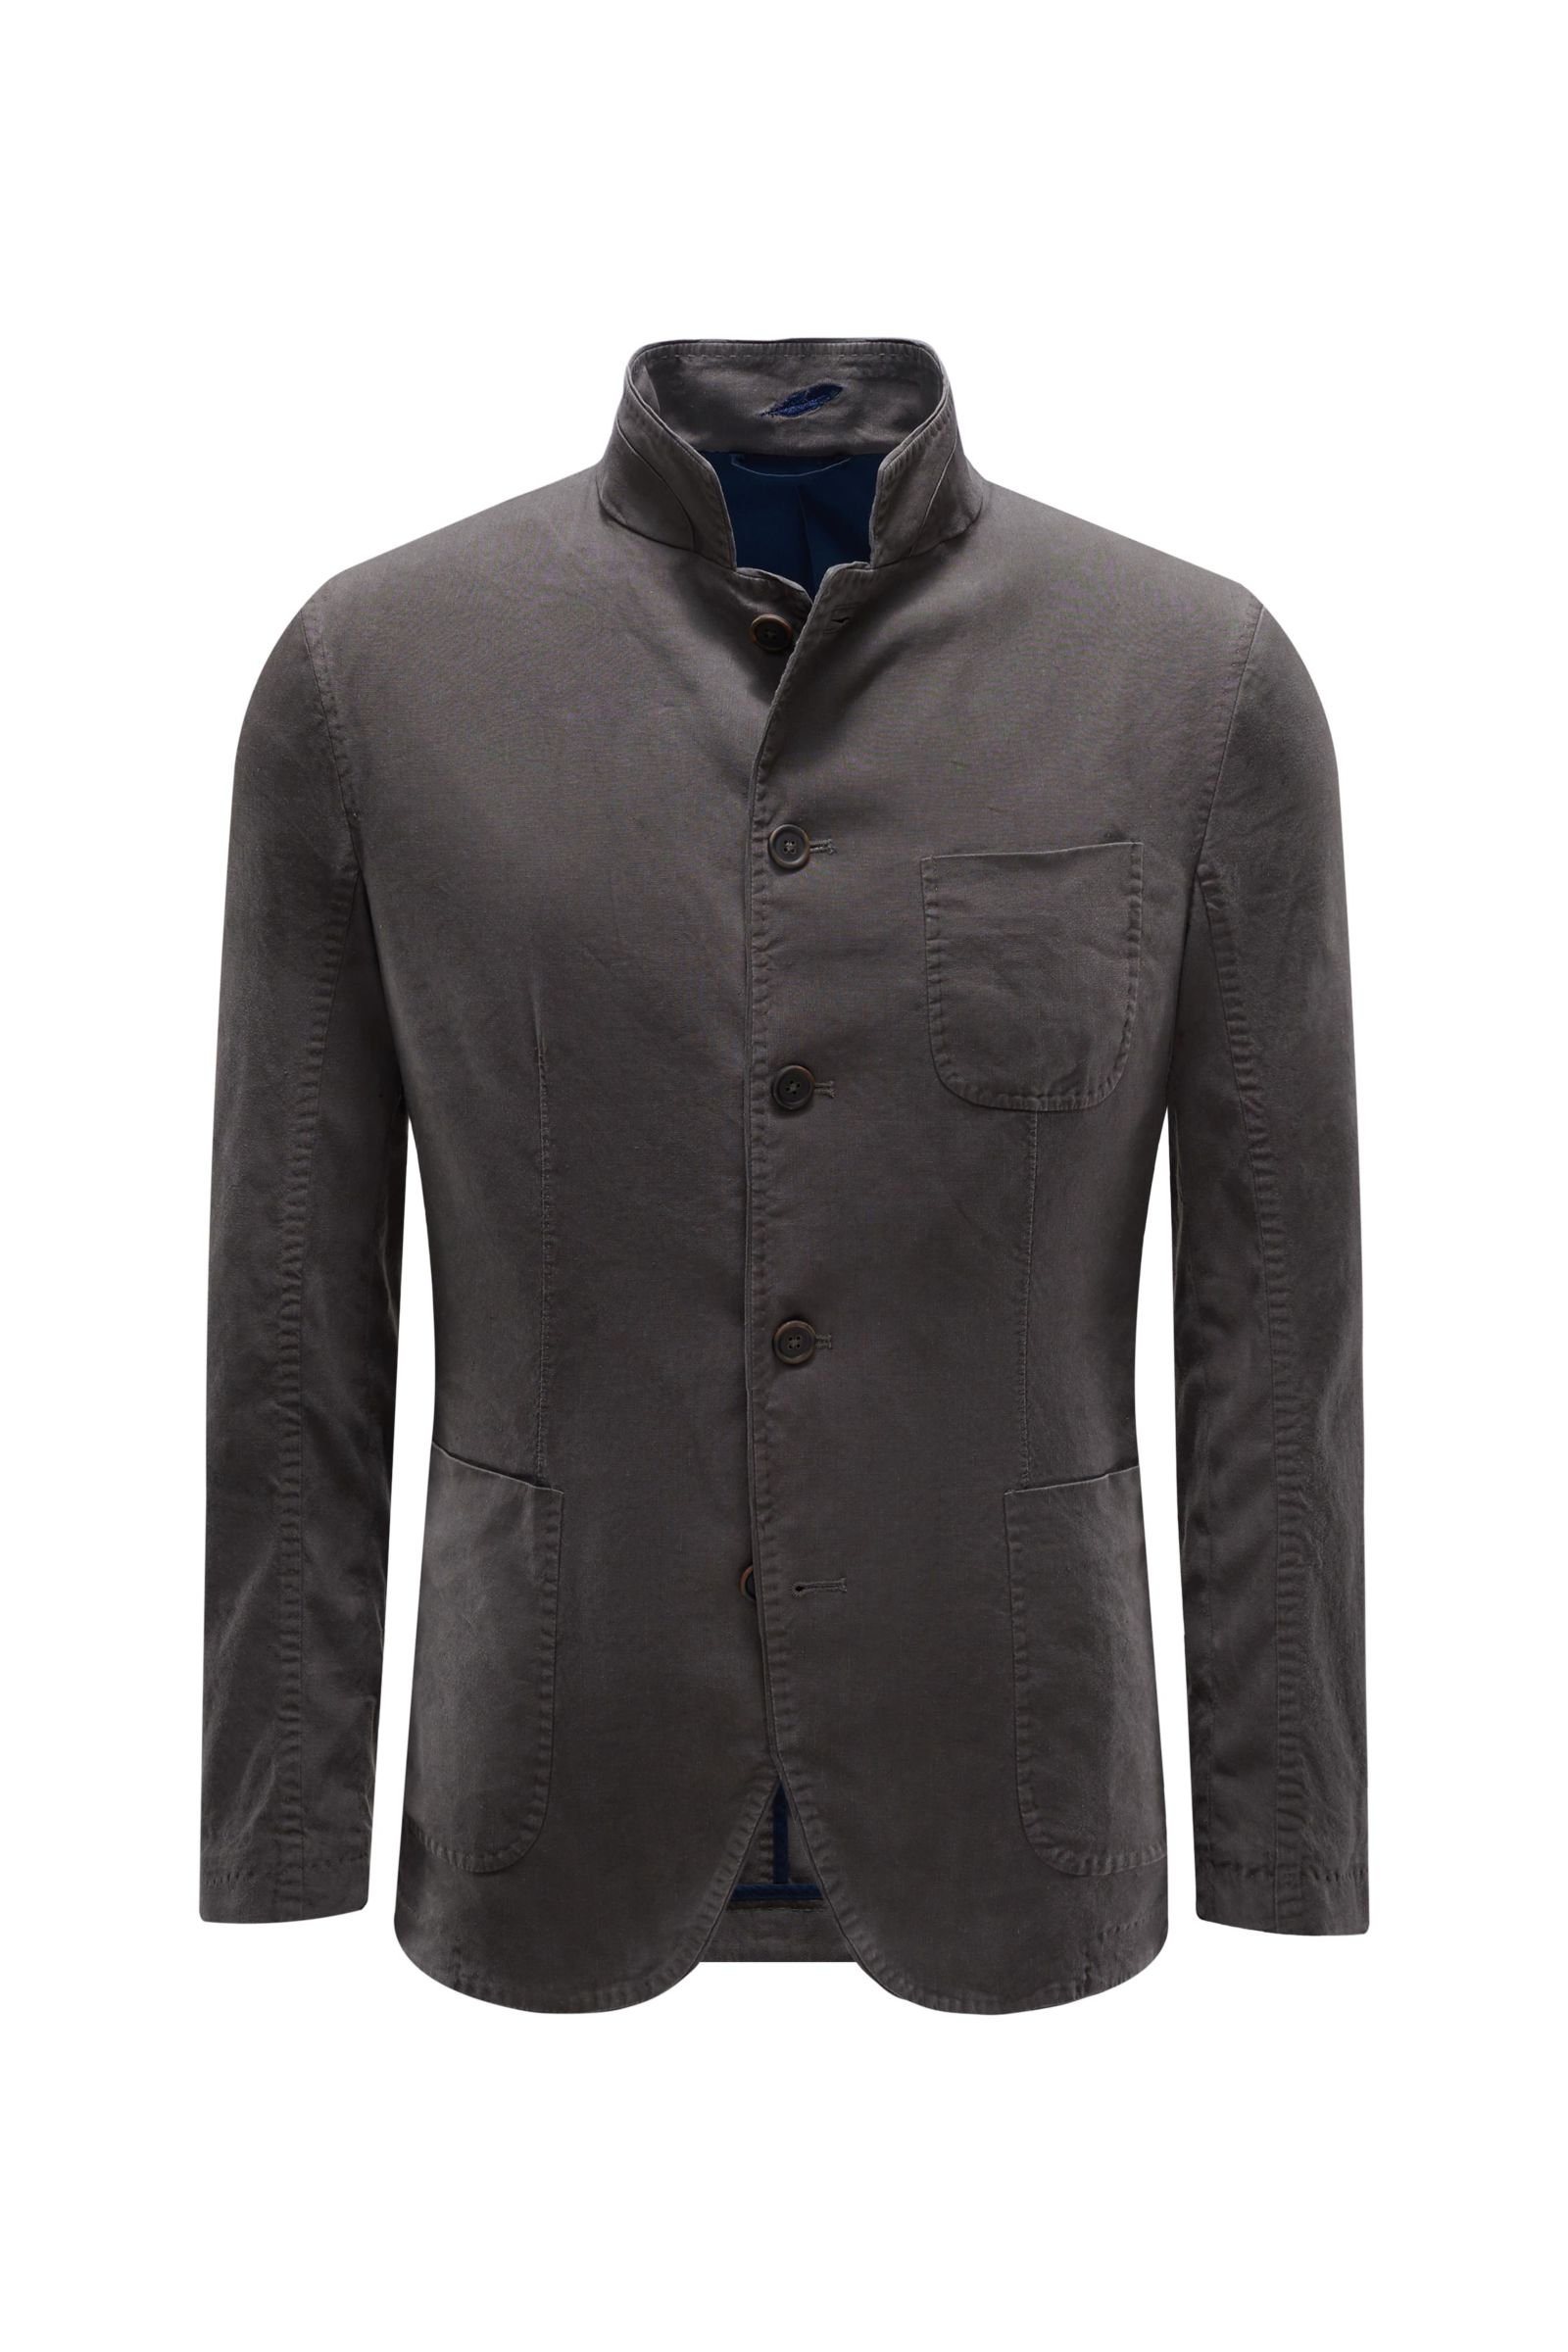 Smart-casual jacket dark grey